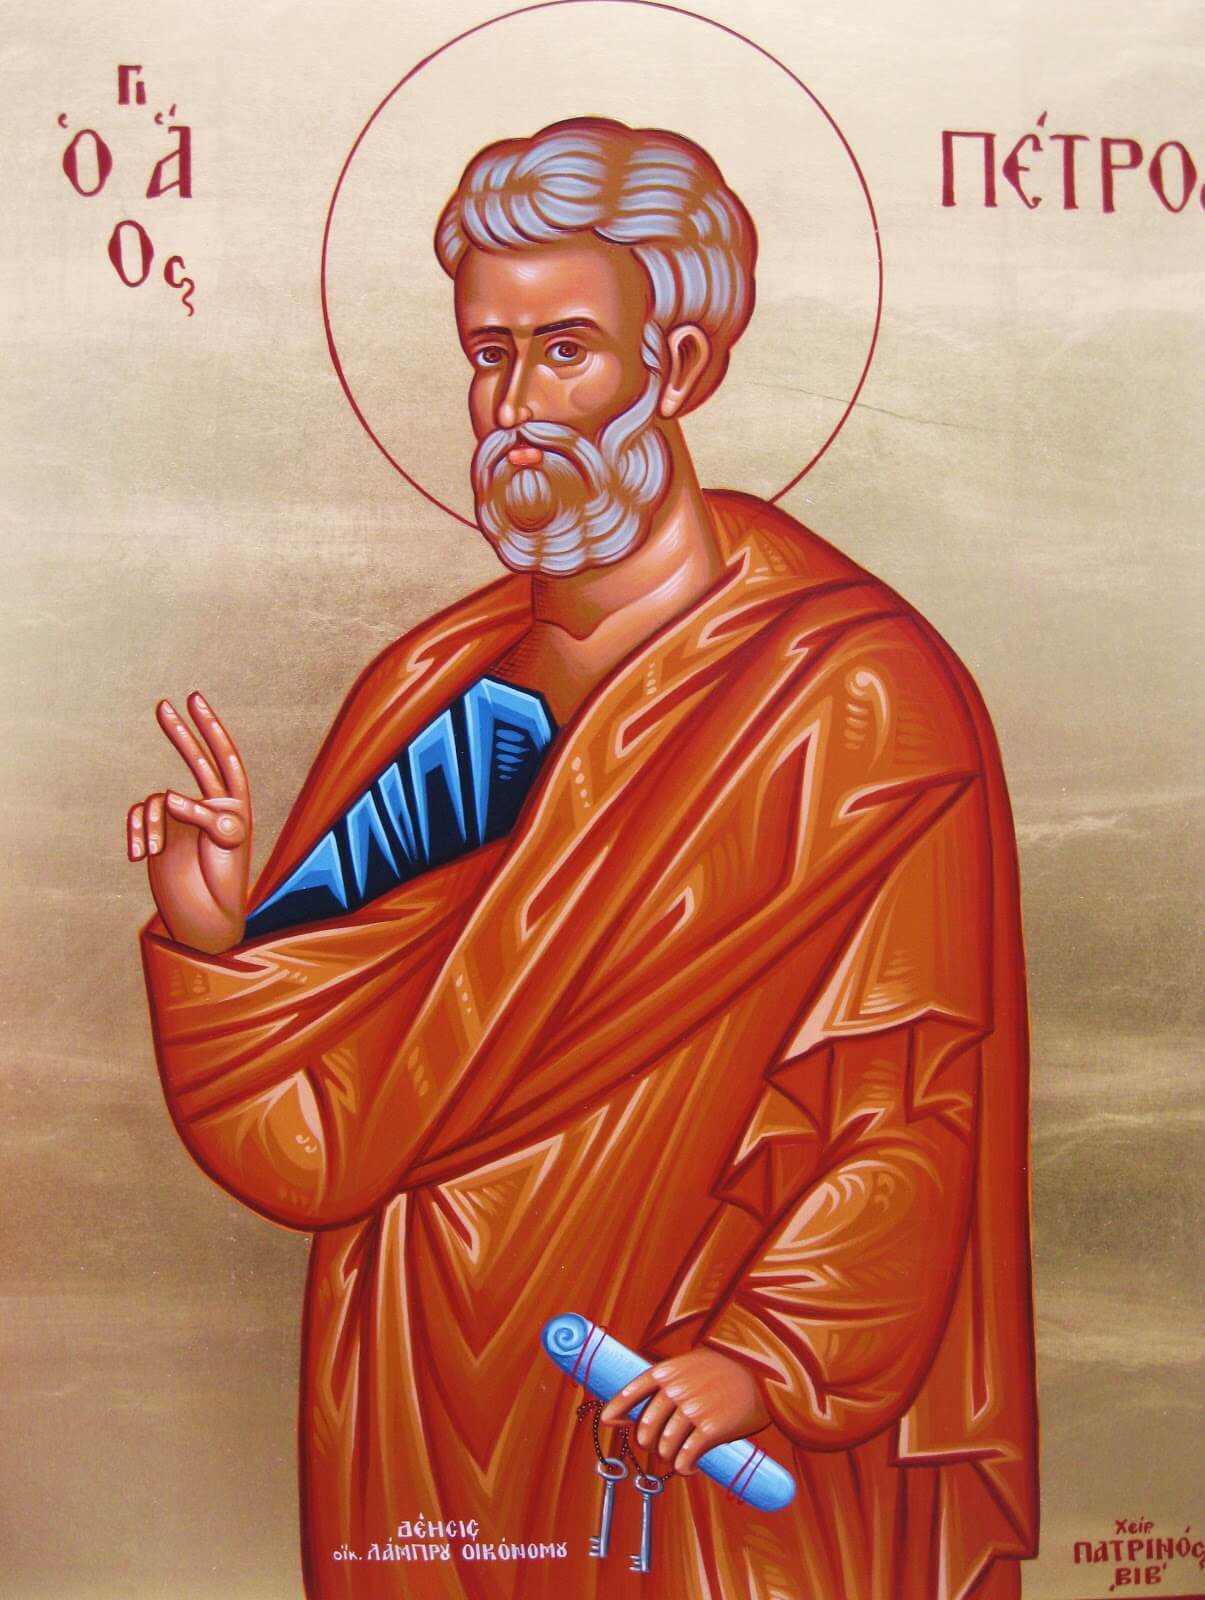 Апостол Петр был одним из ближайших учеников Спасителя